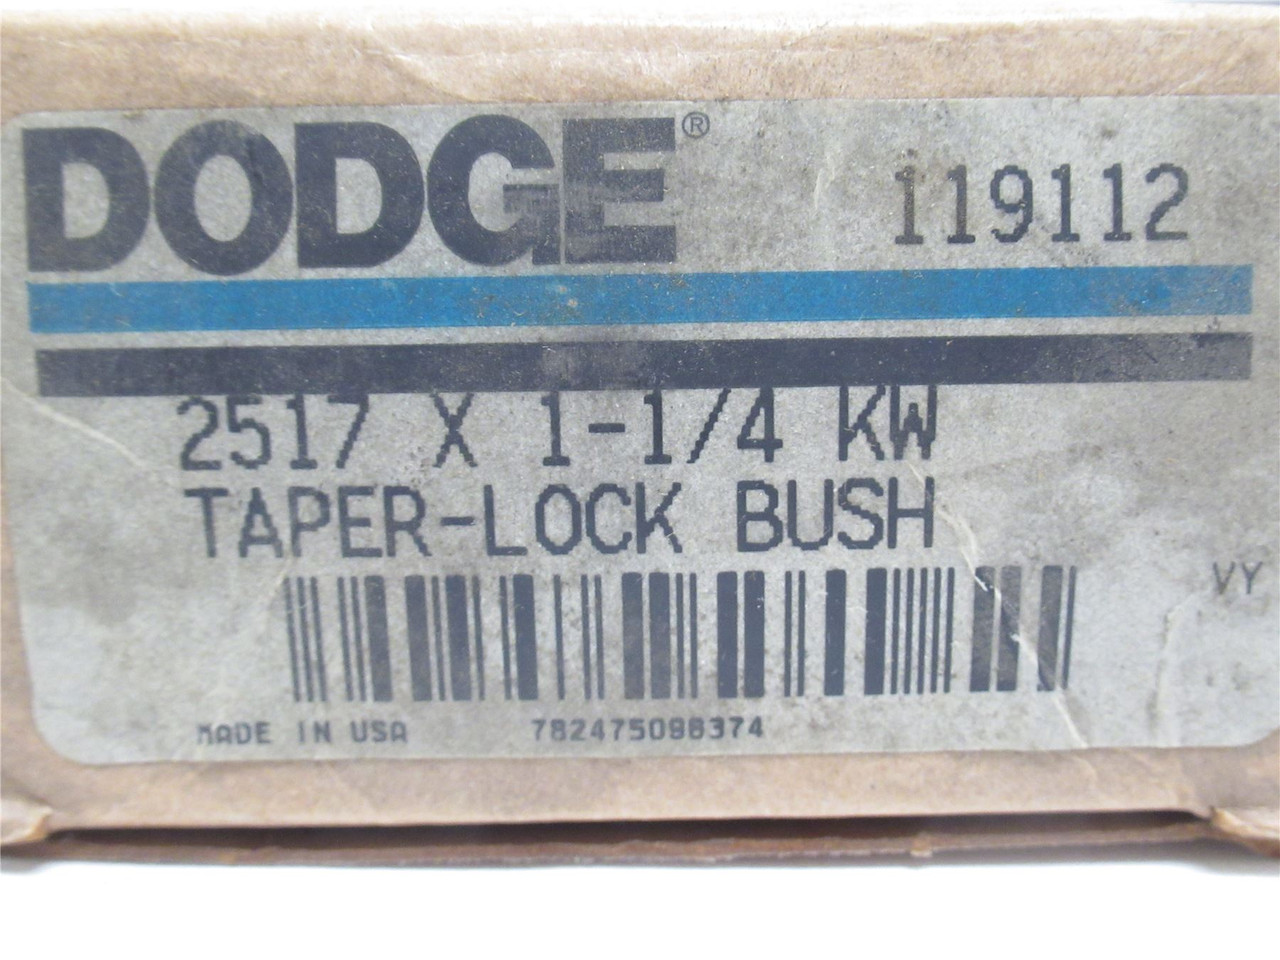 Dodge 2517 x 1-1/4; Taper-Lock Bushing 119112; 1-1/4"ID